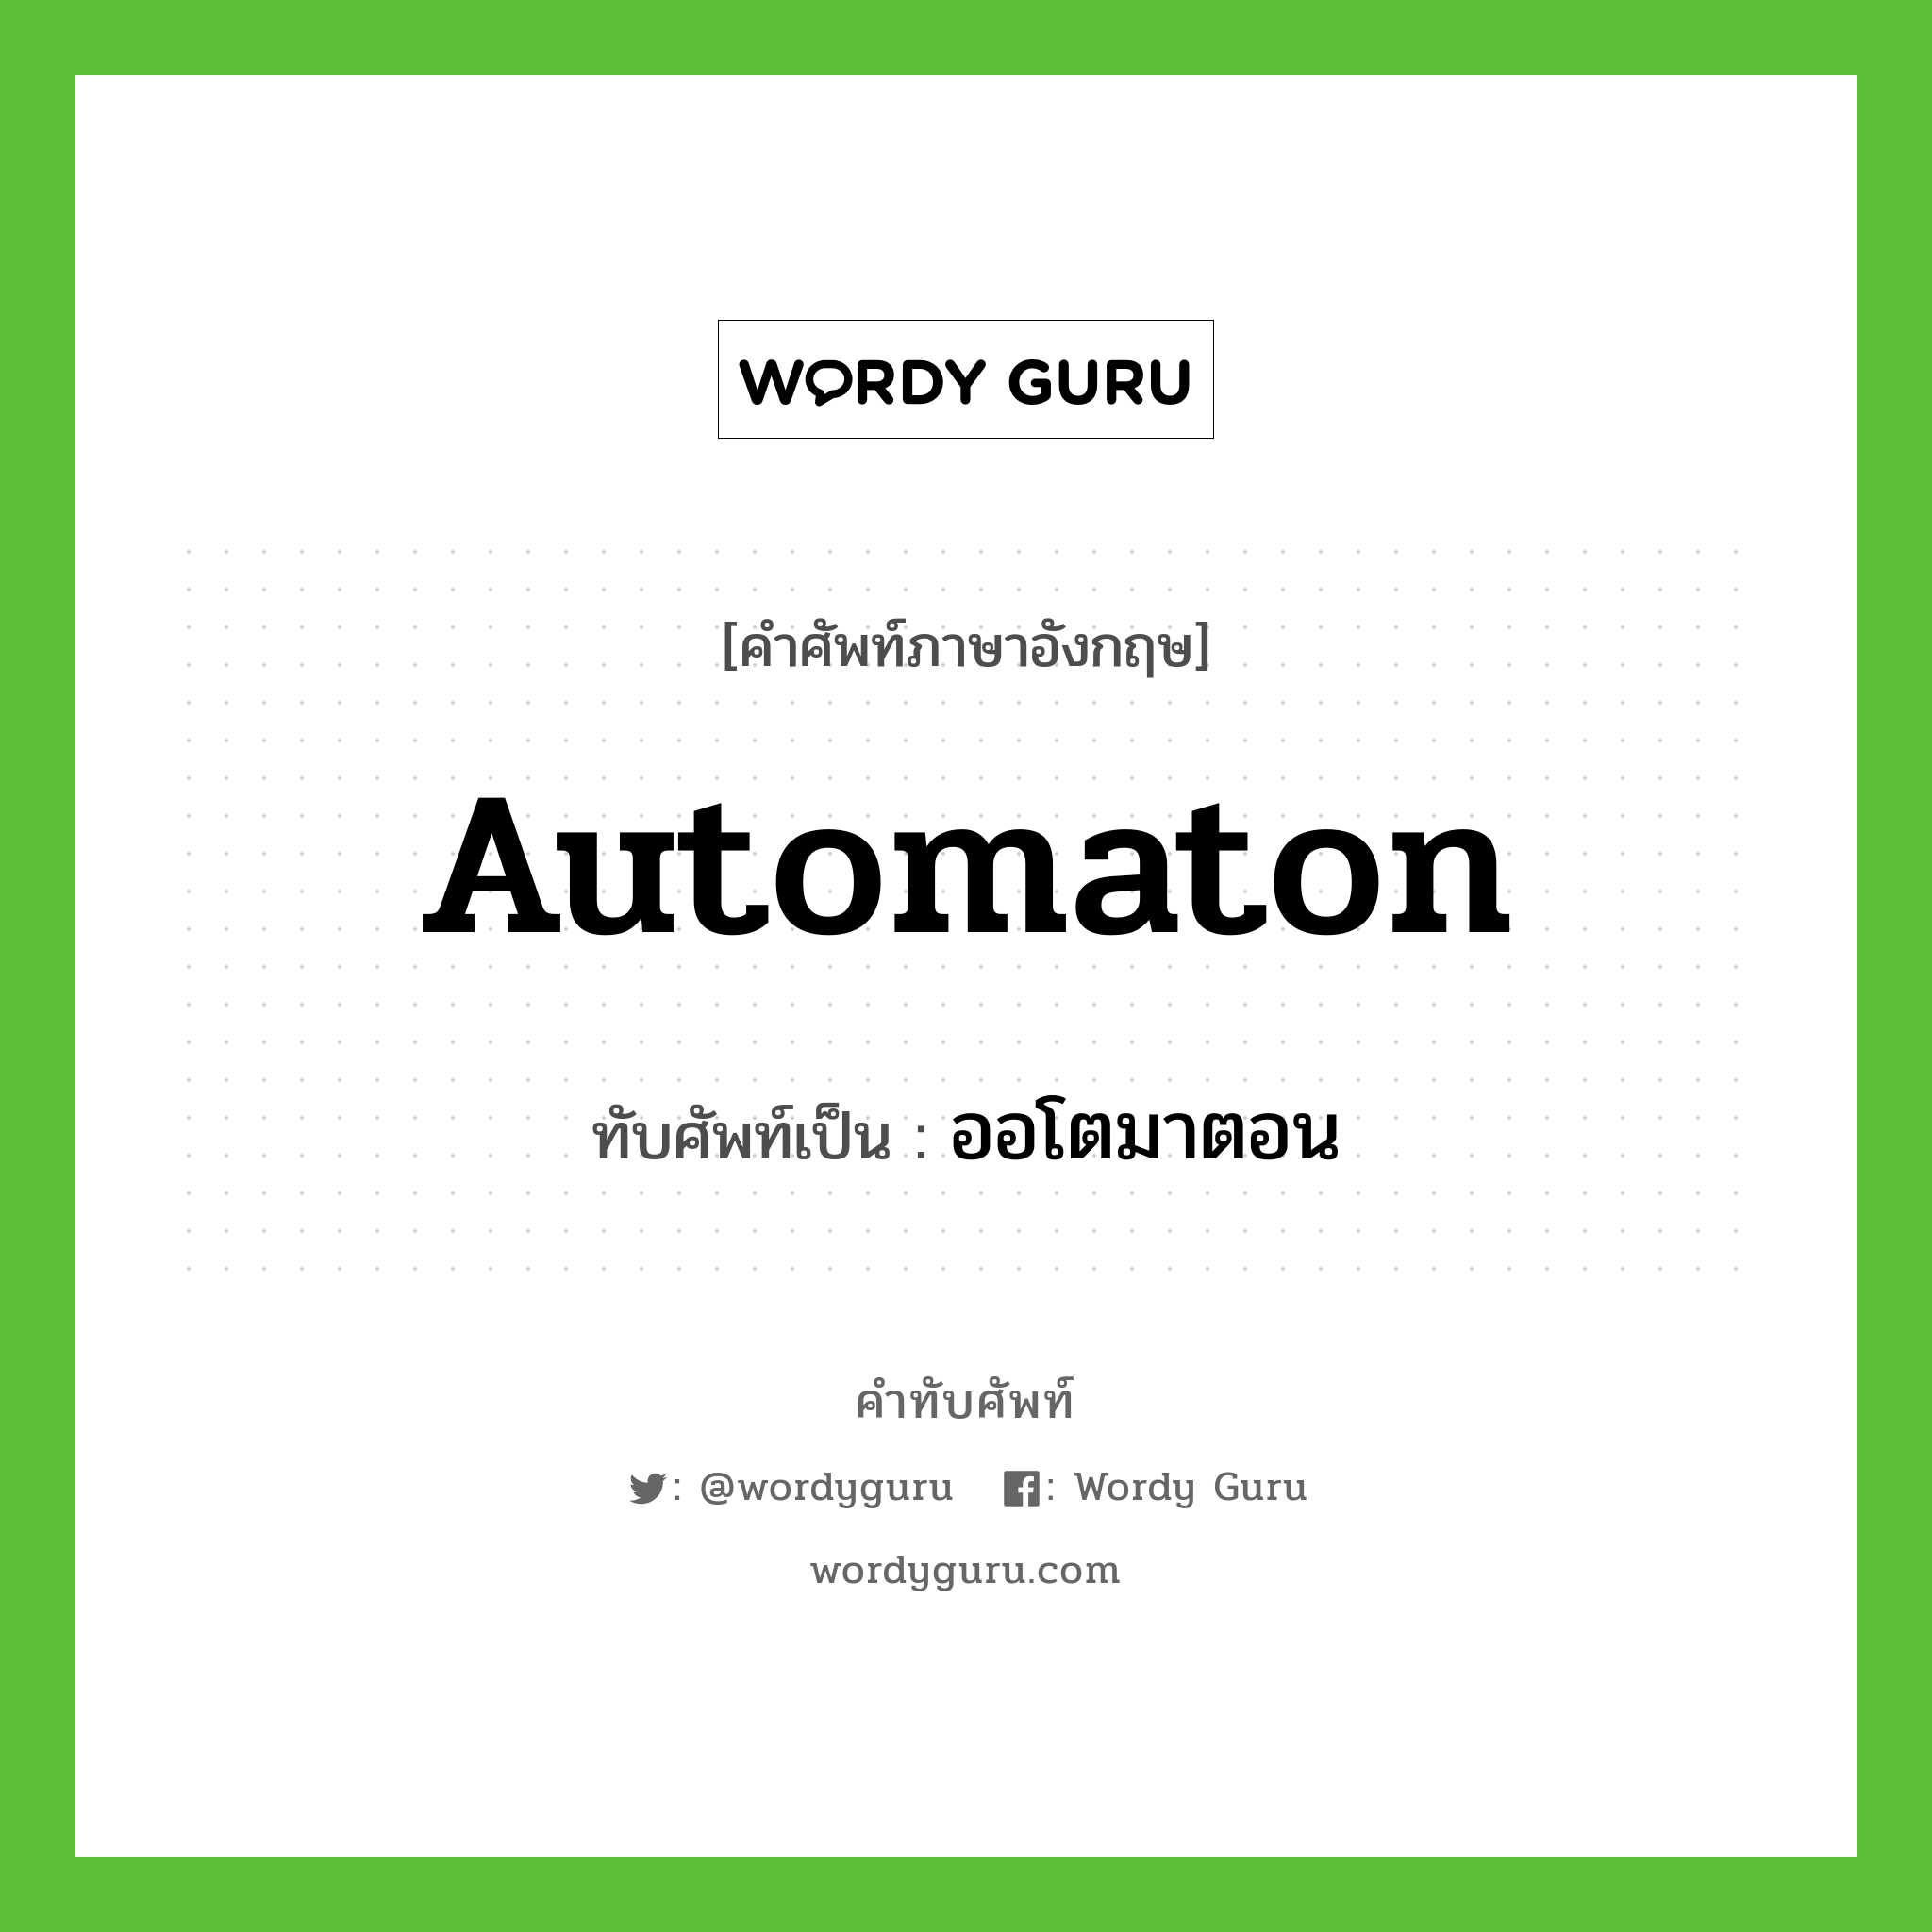 automaton เขียนเป็นคำไทยว่าอะไร?, คำศัพท์ภาษาอังกฤษ automaton ทับศัพท์เป็น ออโตมาตอน